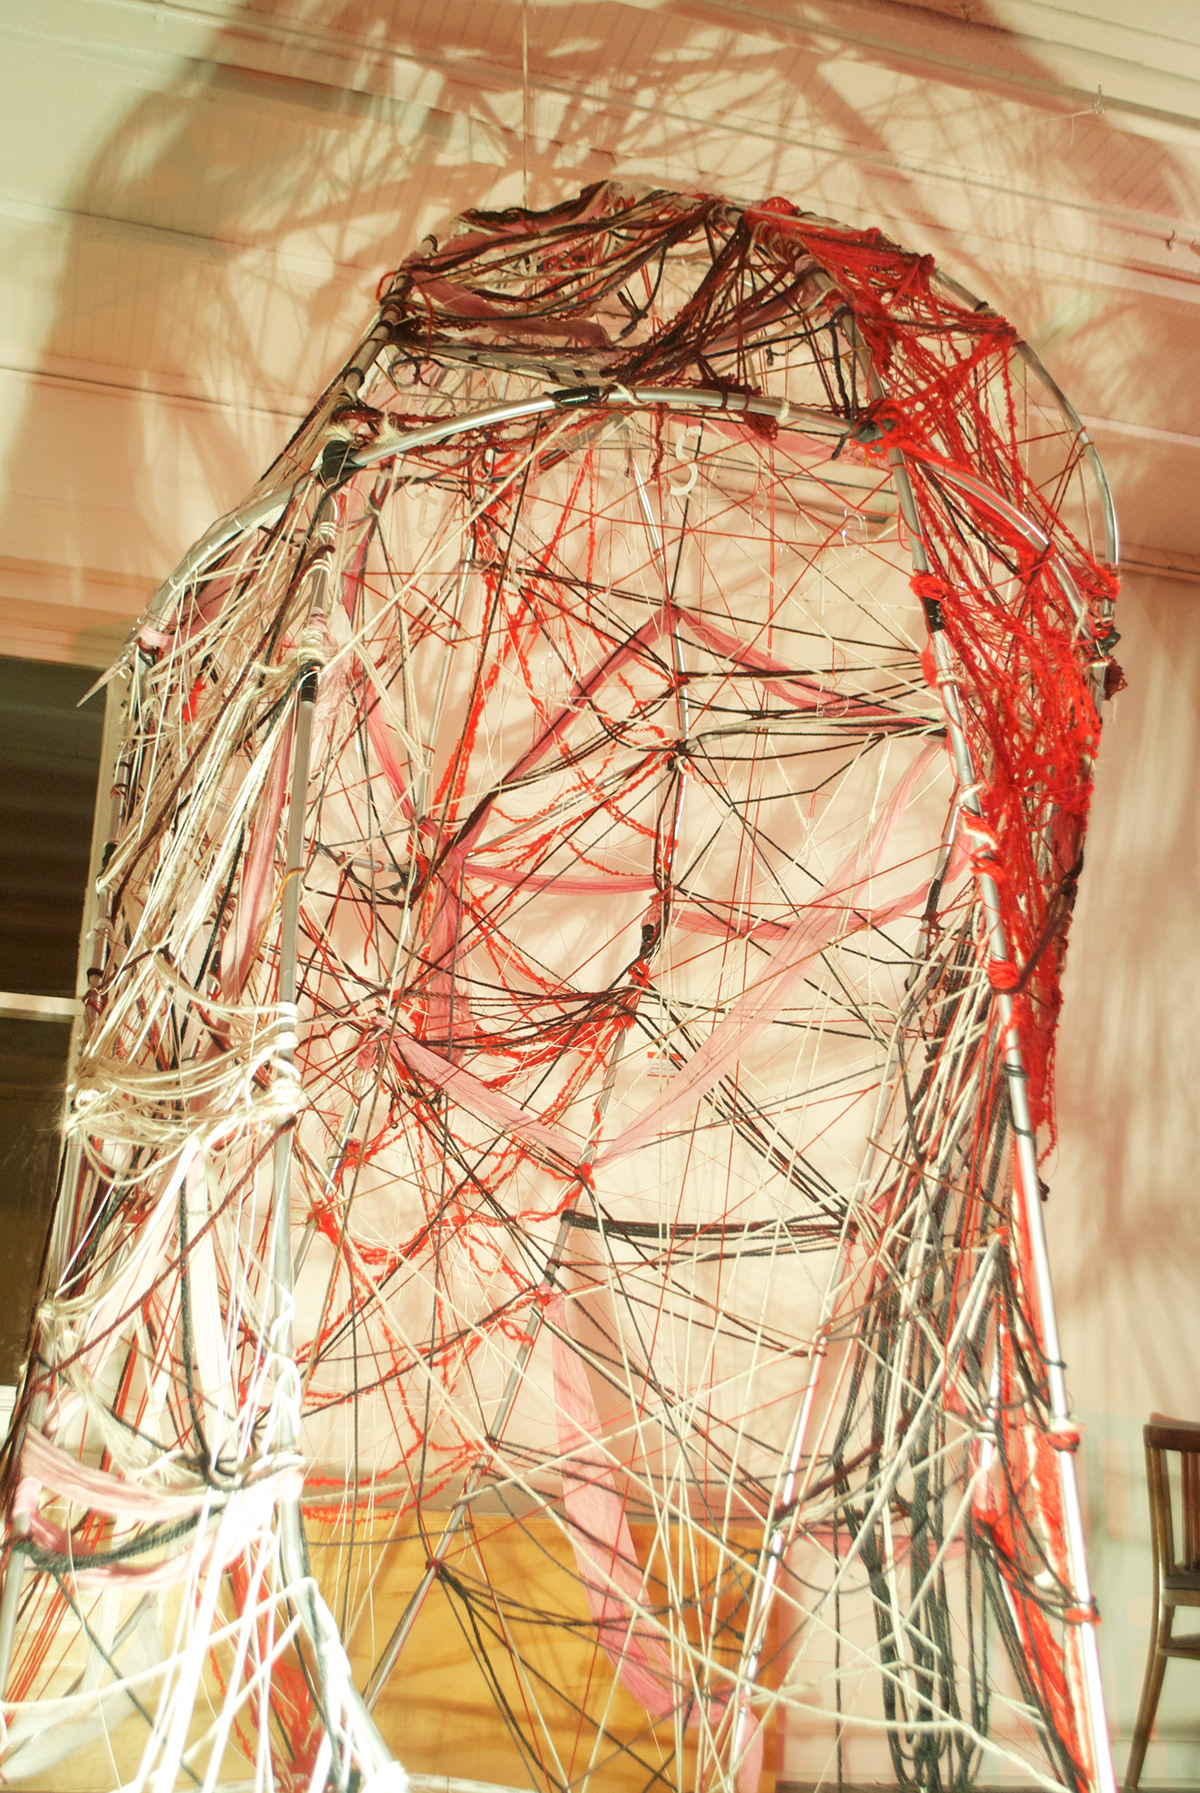 prinstallation installation string art